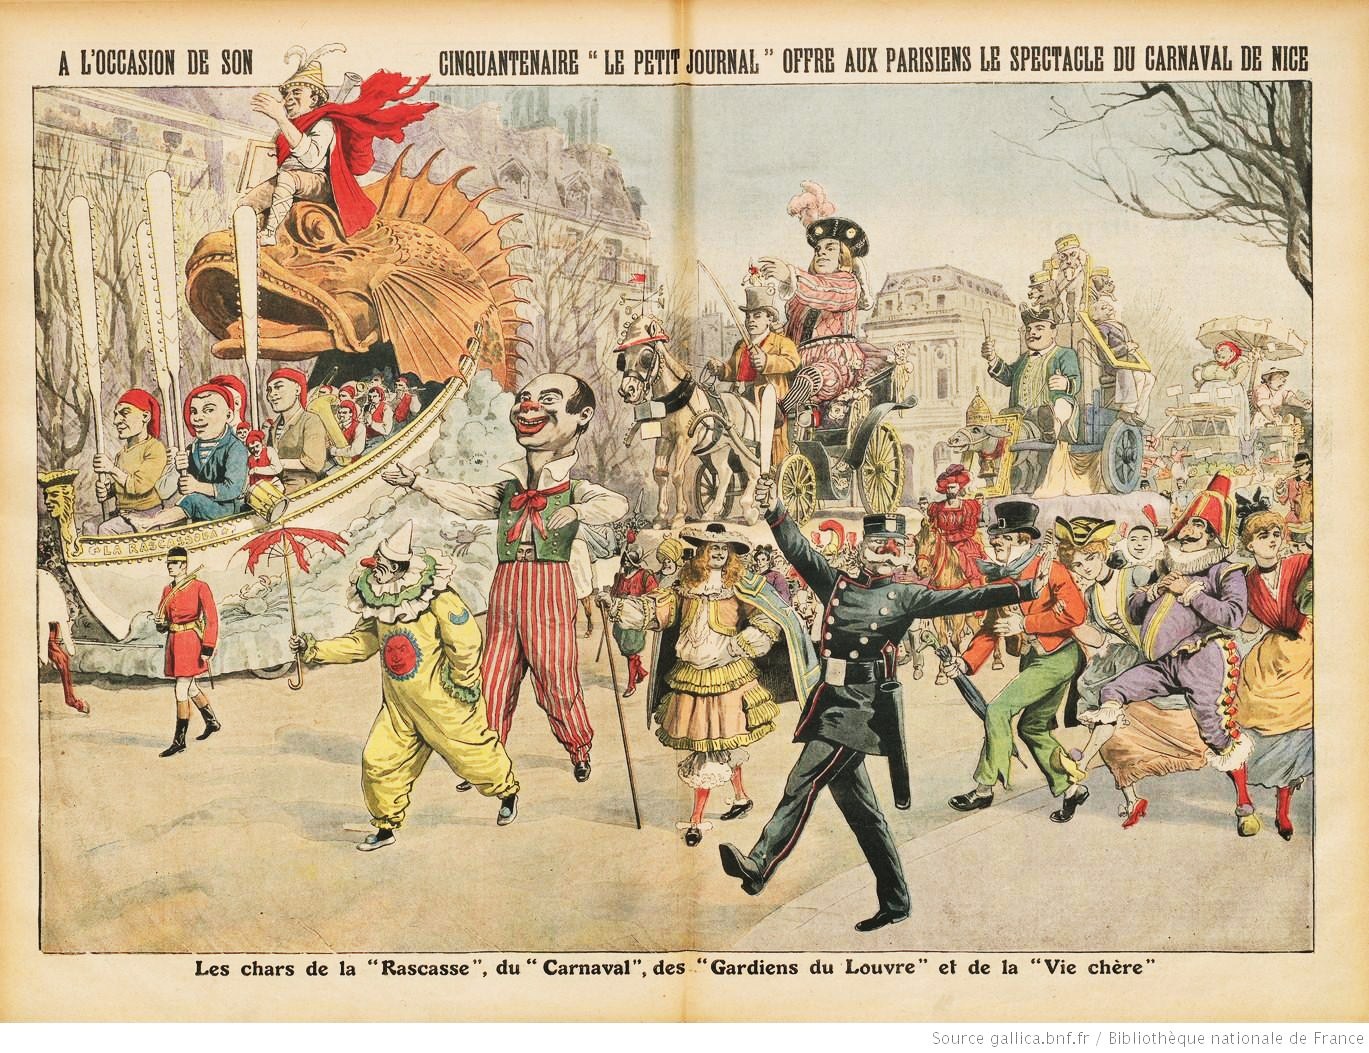 Lo Carnaval de Nissa – Soviers de detzaira